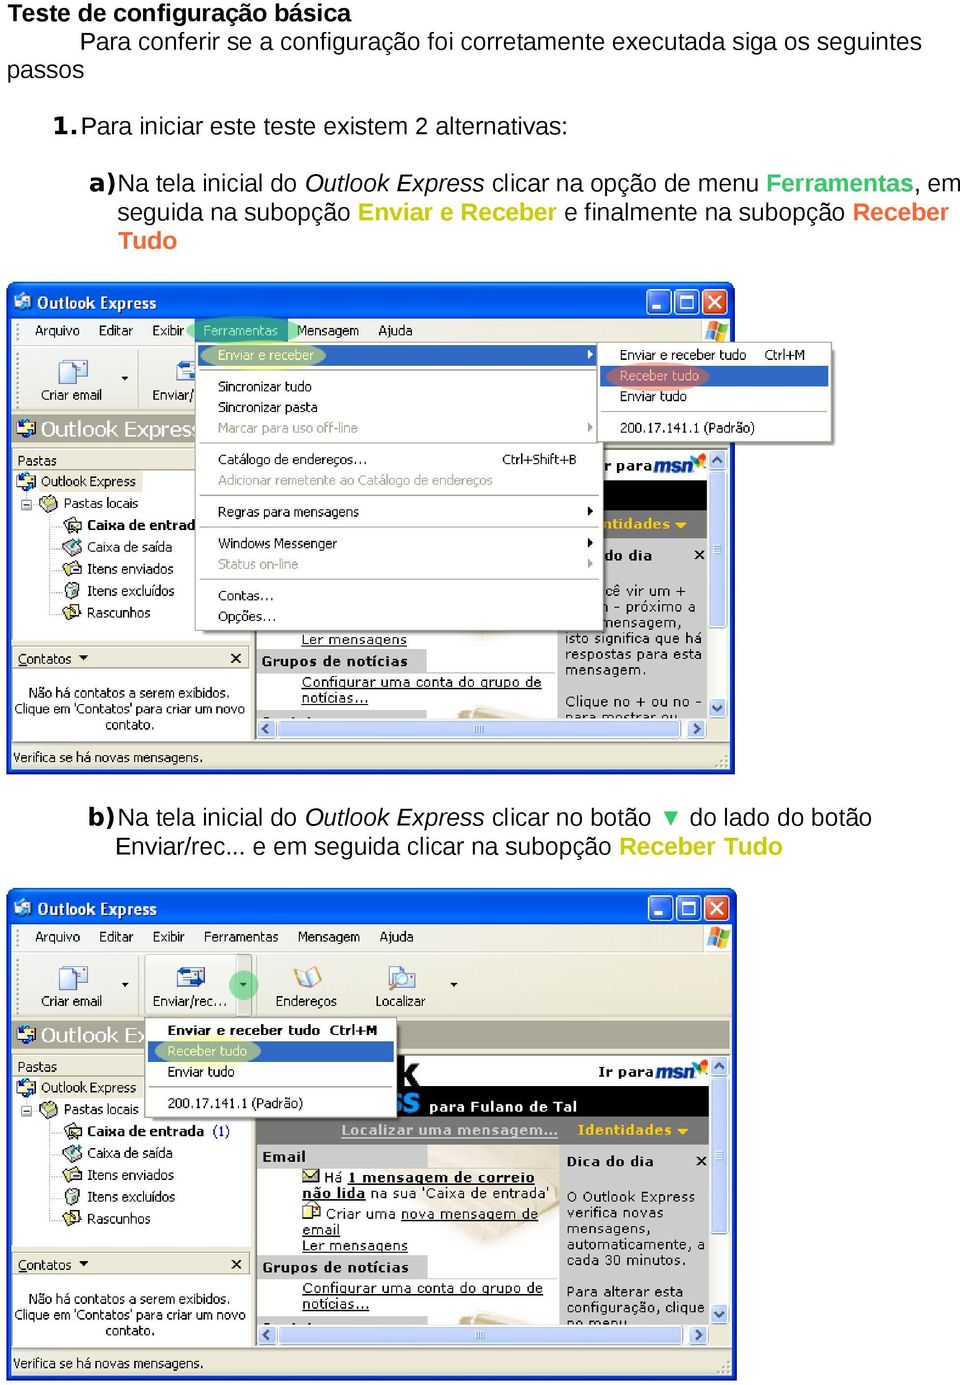 Para iniciar este teste existem 2 alternativas: a)na tela inicial do Outlook Express clicar na opção de menu